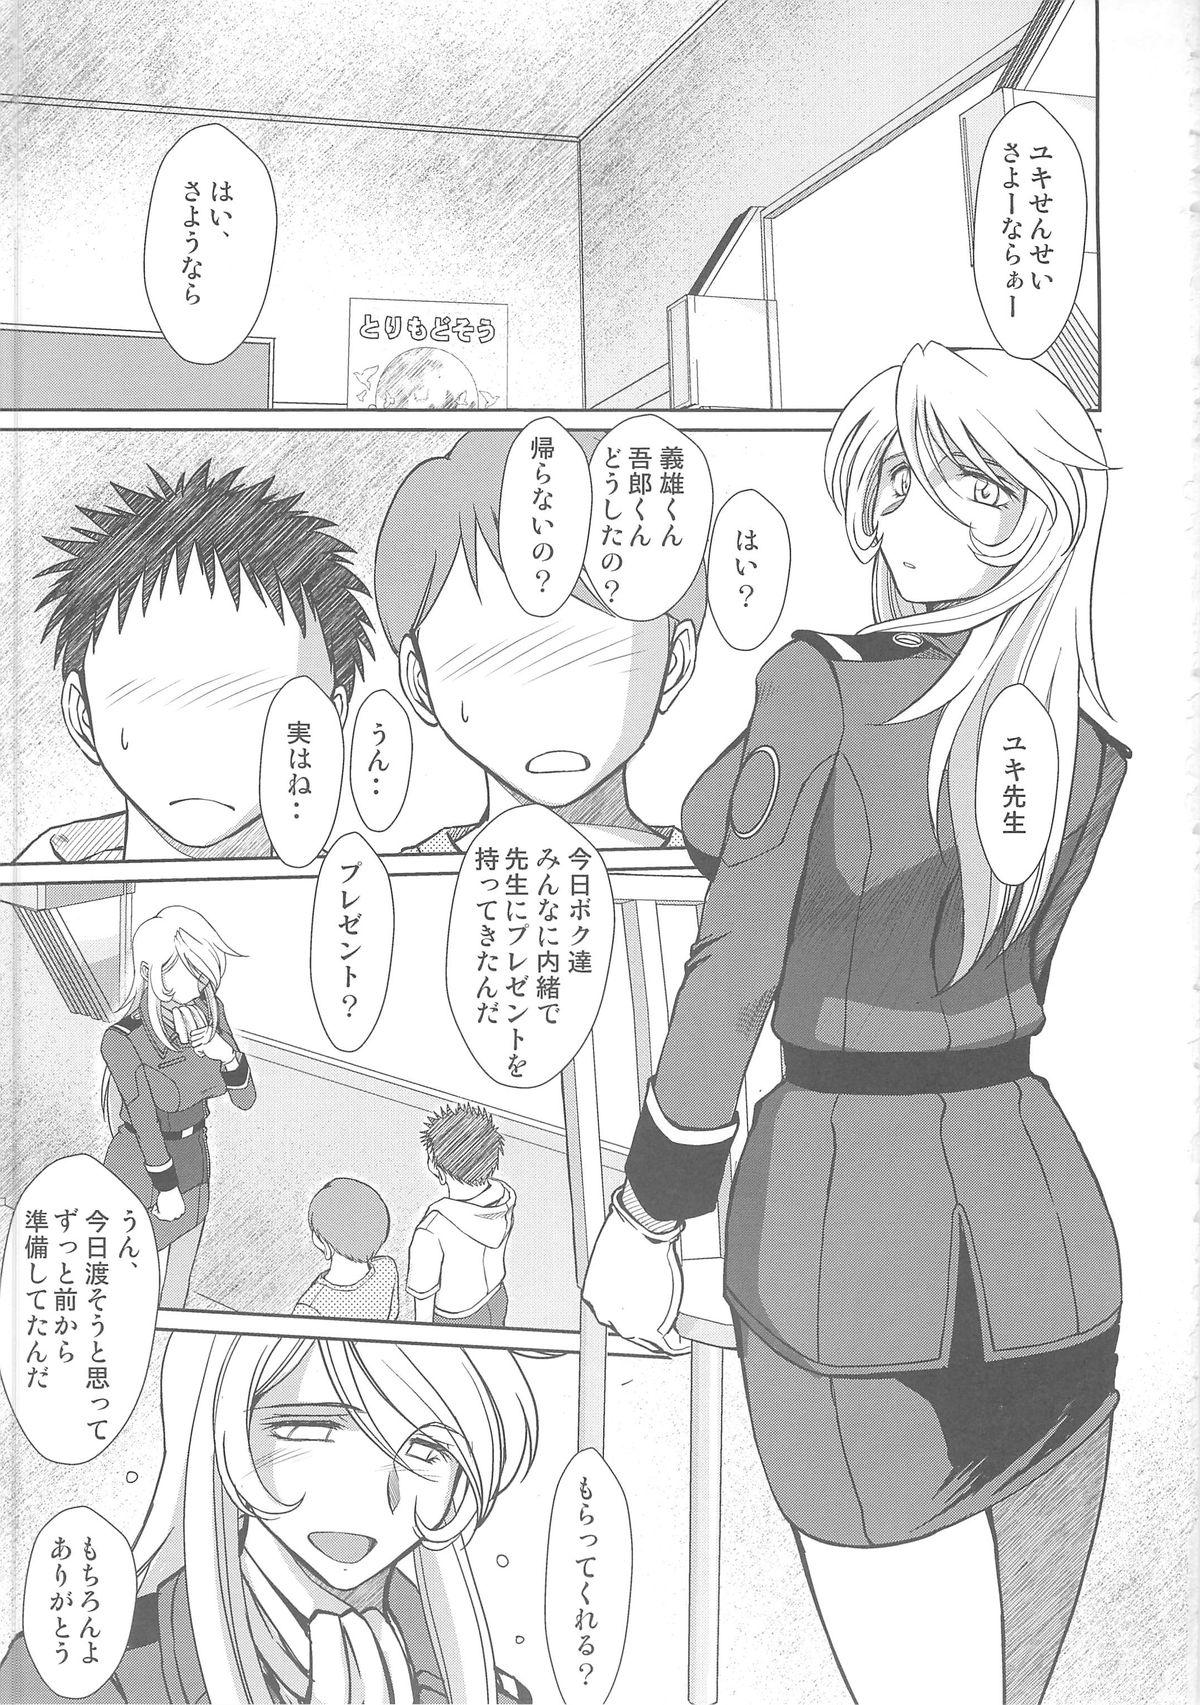 Sextoys 2199-nen no Mori Yuki - Space battleship yamato Orgasmus - Page 2